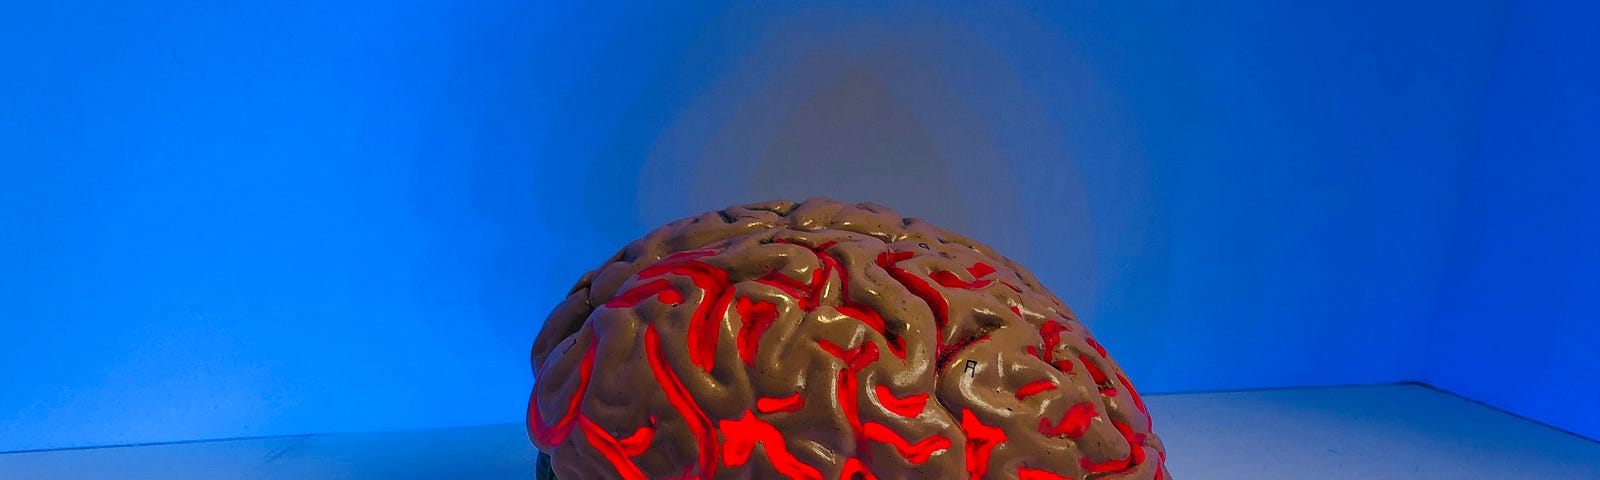 picture of replica brain